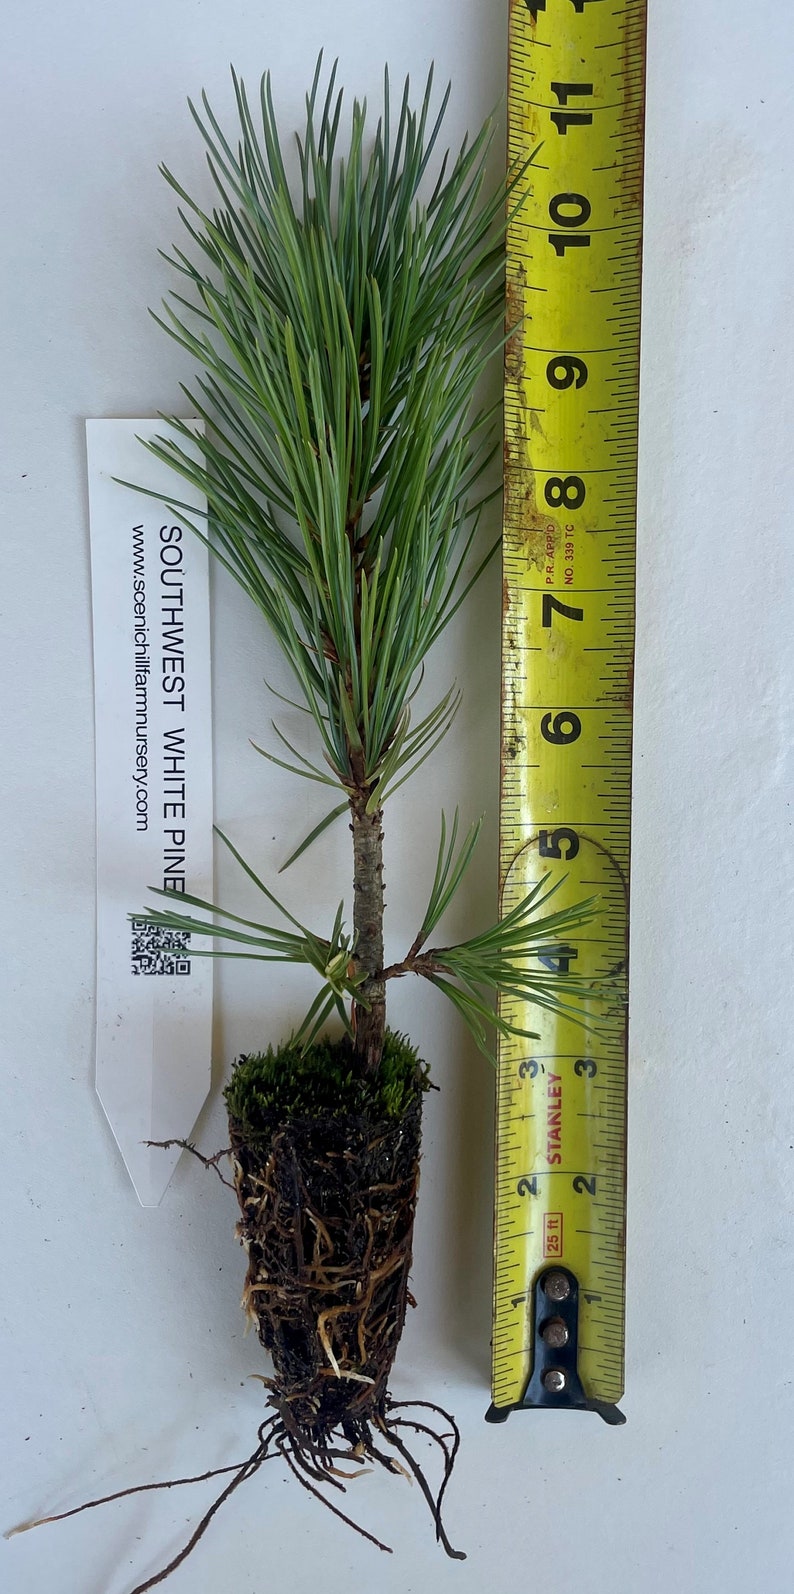 Pinus strobiformis, Southwestern white pine or Mexican White Pine Landscape or Bonsai tree. image 1